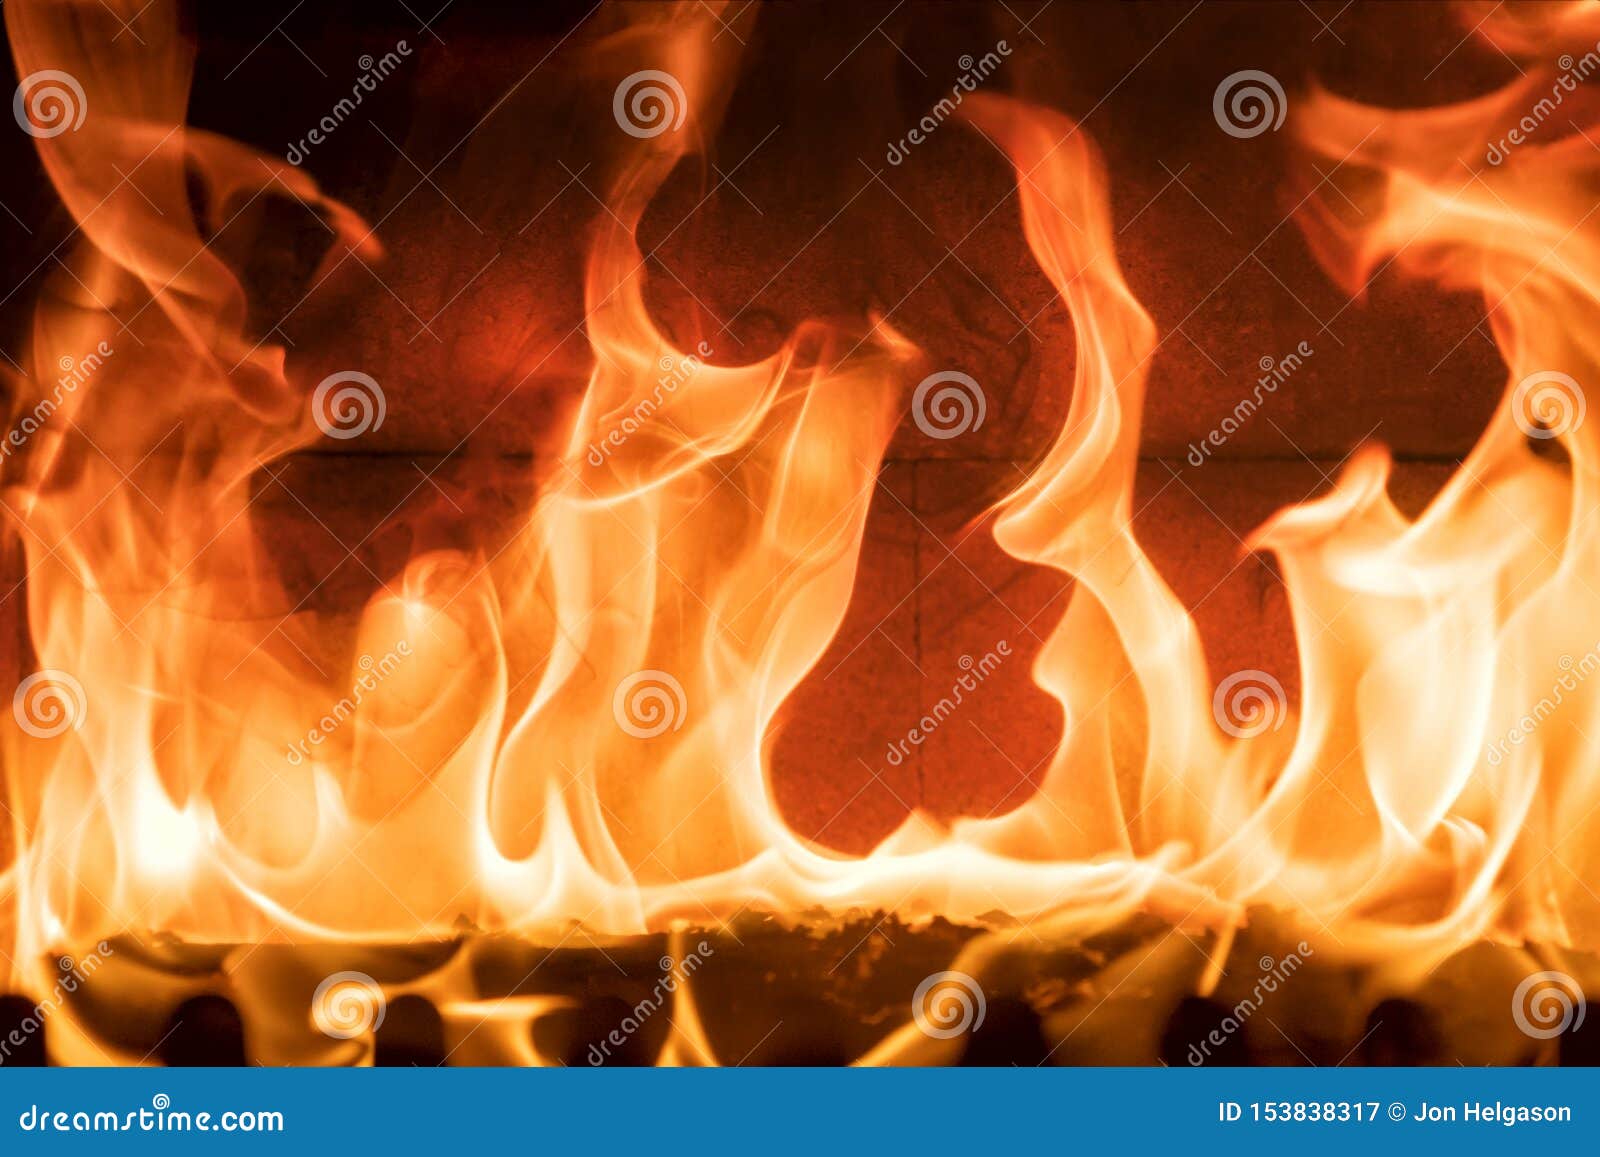 fireplace flaming close up